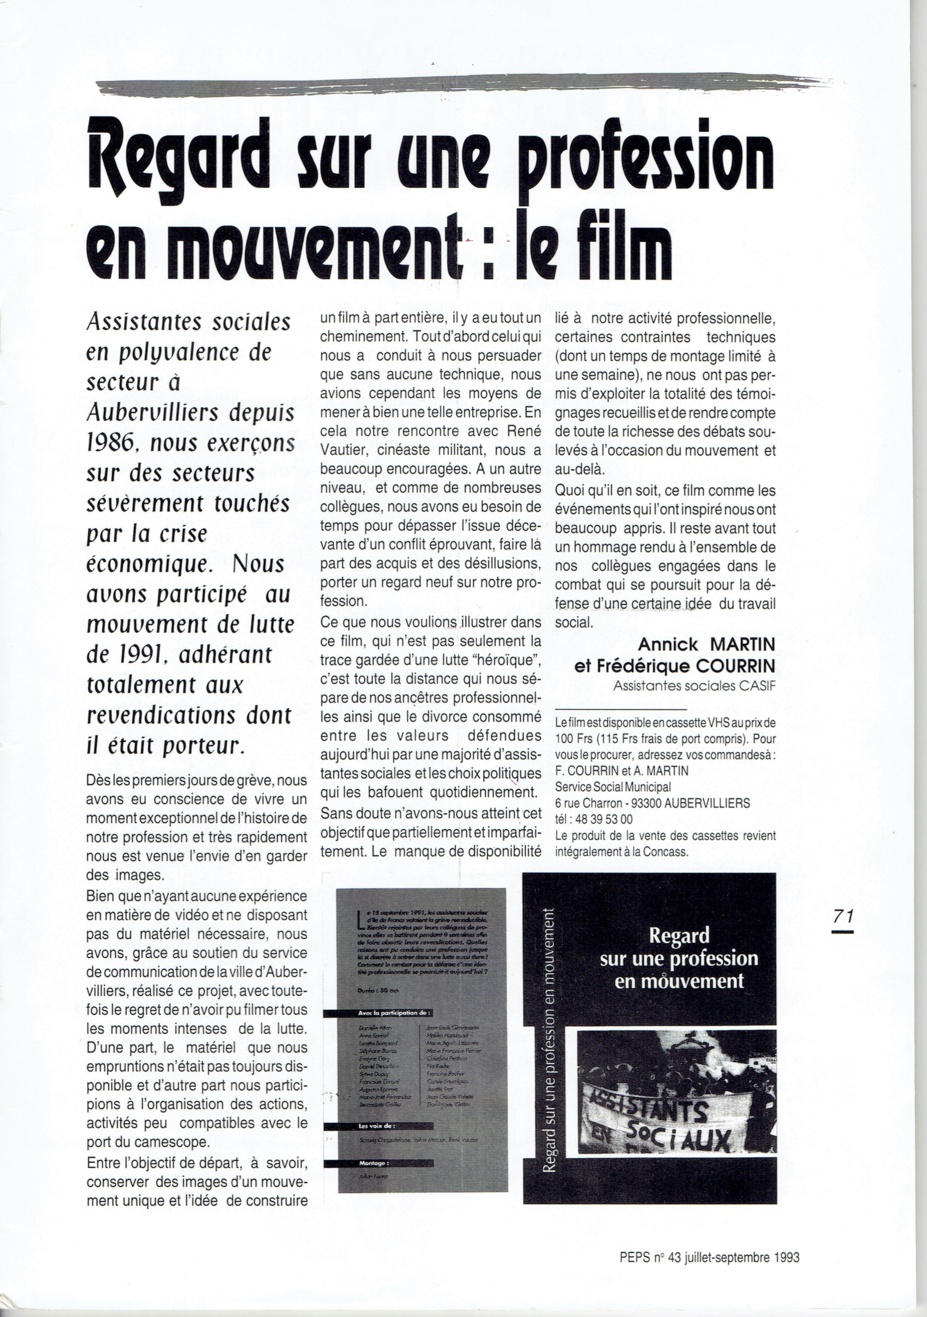 Documentaire - Regard sur une profession en mouvement - Annick MARTIN et Frédérique COURRIN